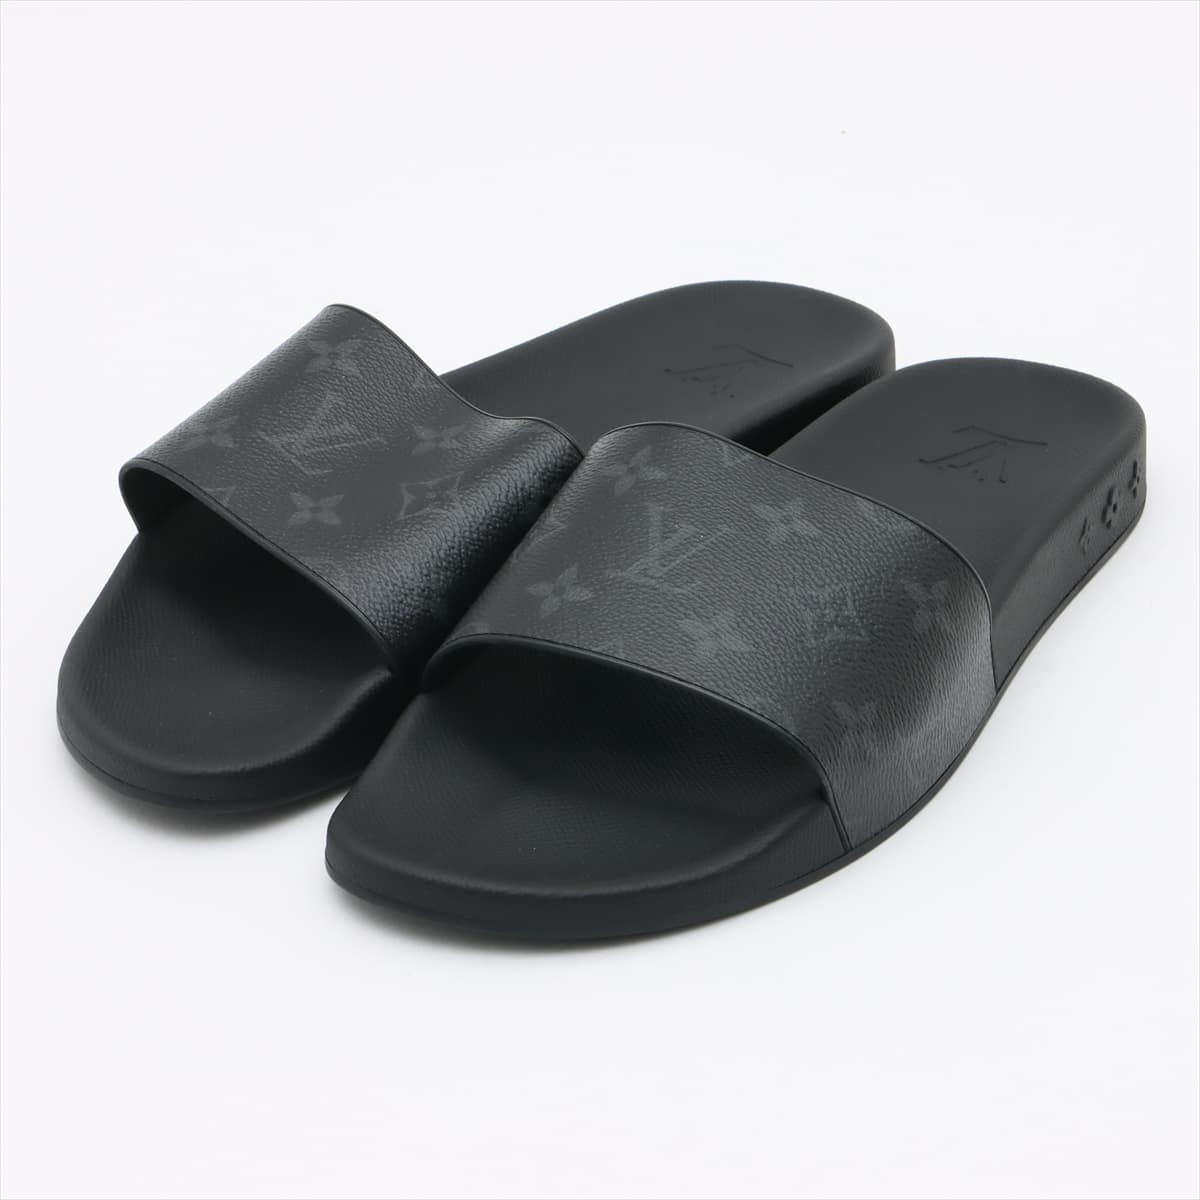 Louis Vuitton Waterfront line 20 years Rubber Sandals 8 Men's Black Monogram VS0230